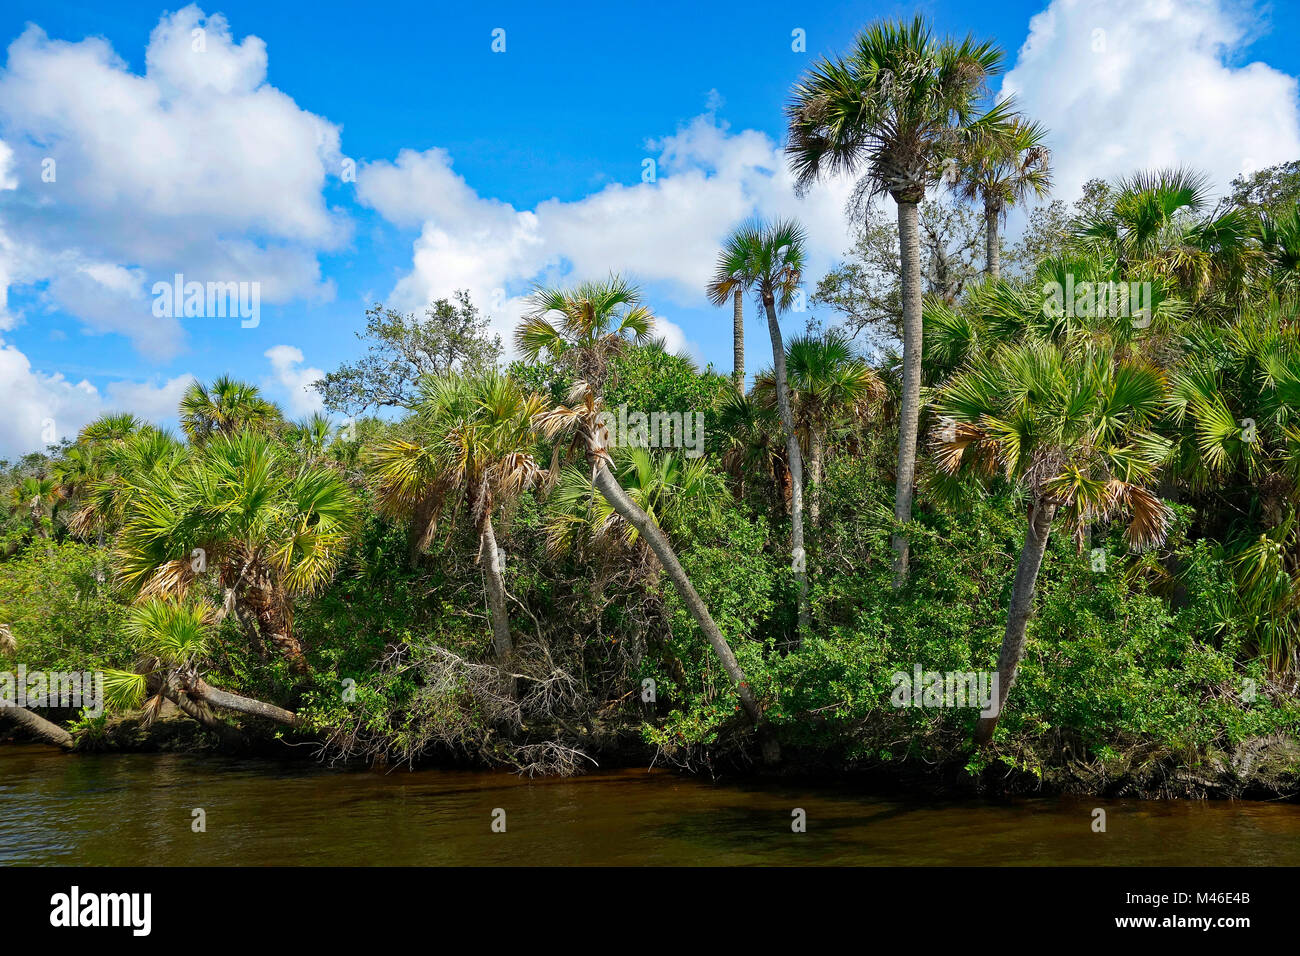 The Wild Myakka River, southwest Florida, USA Stock Photo